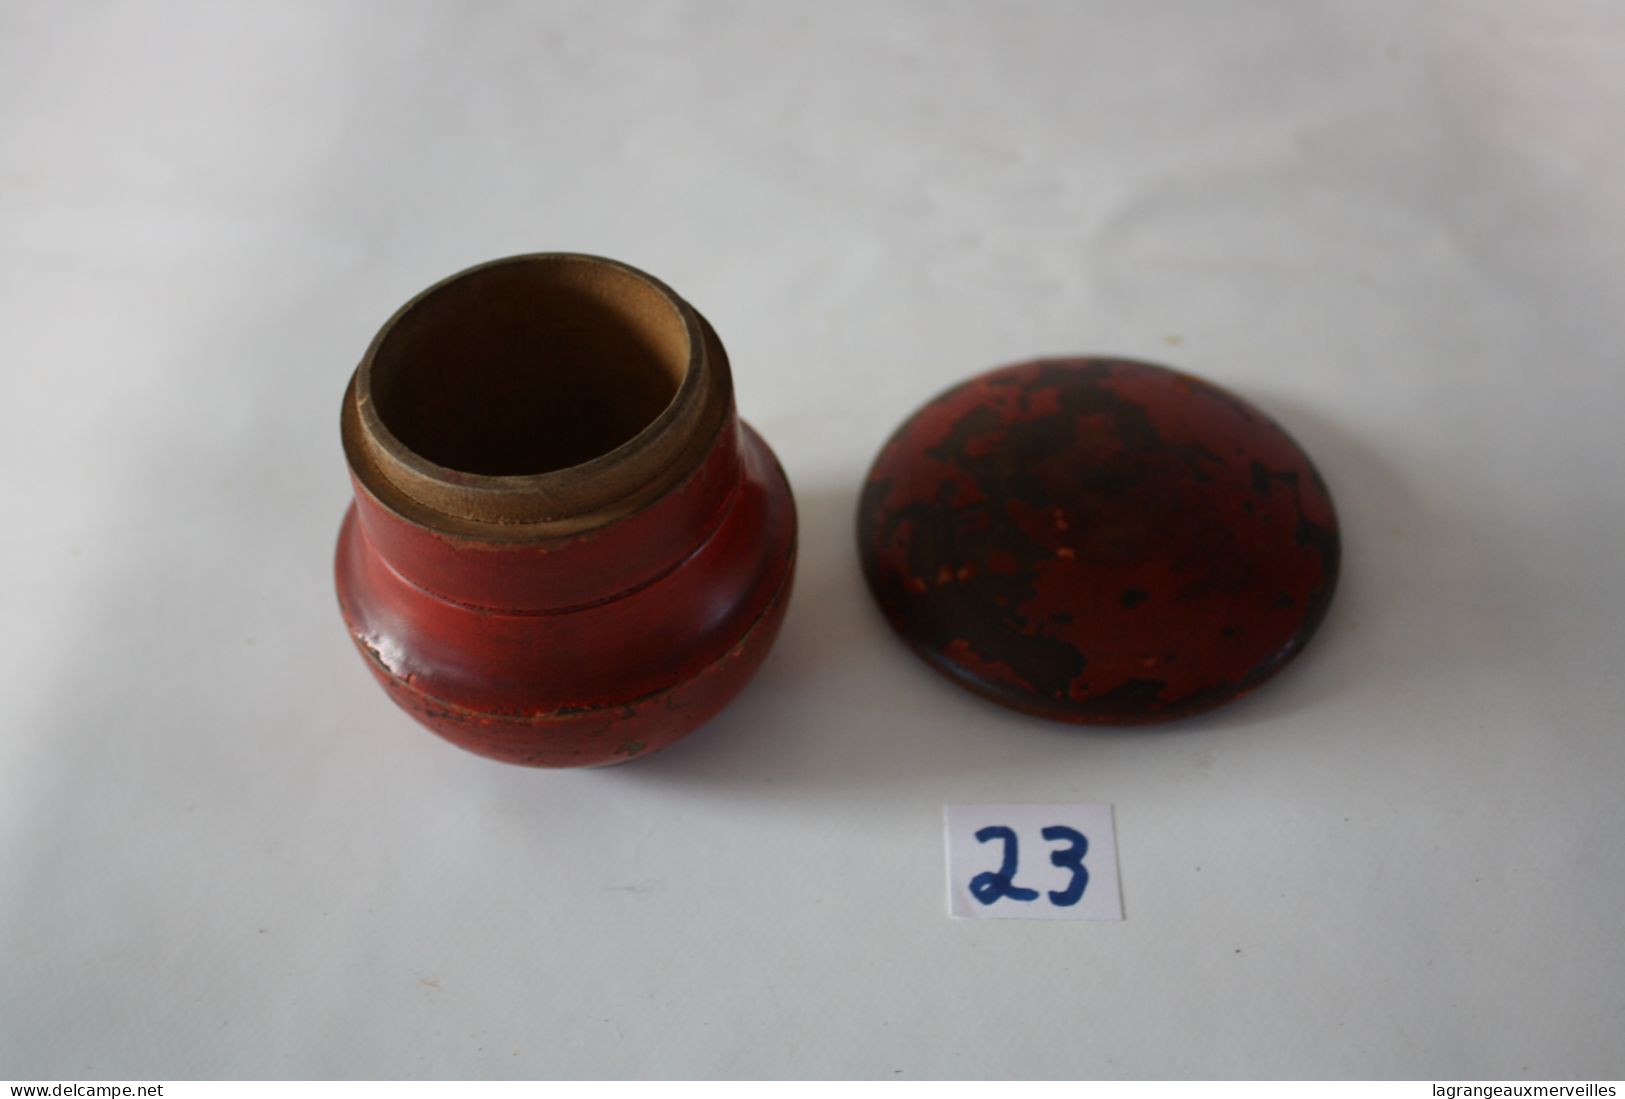 C23 Miniature - Petit pot pour mettre aiguille - couture